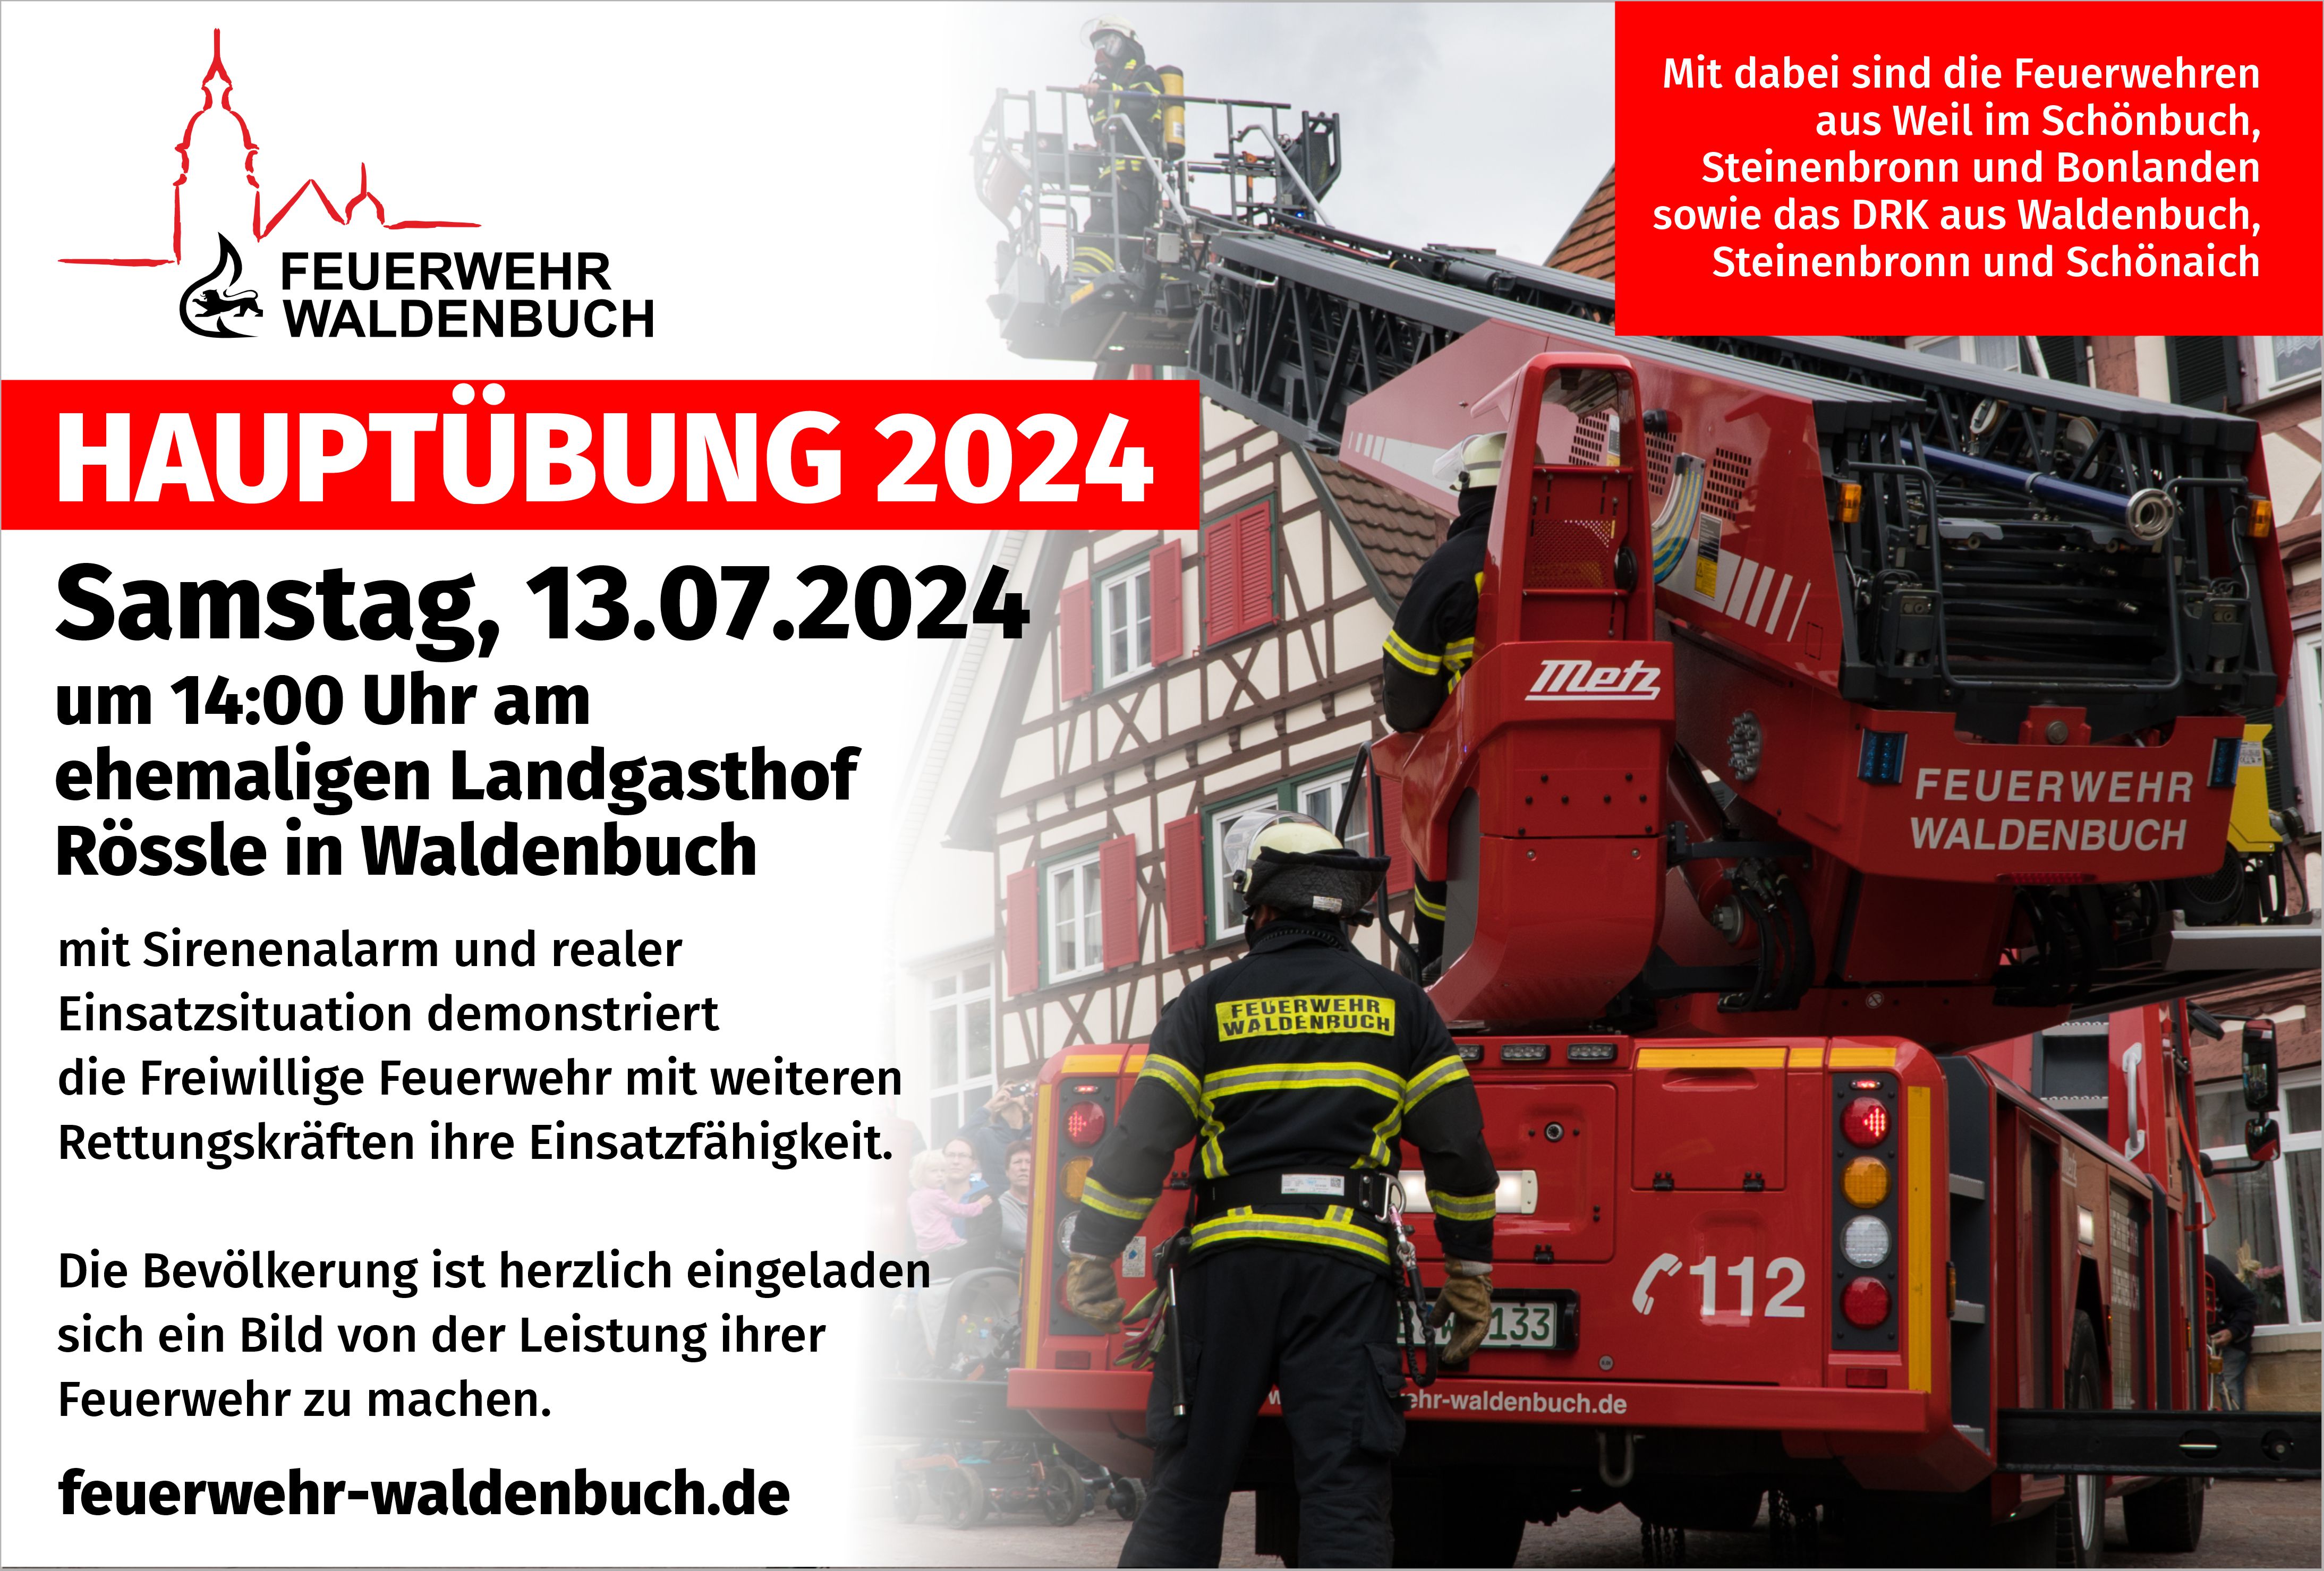 Feuerwehr Waldenbuch Fest 2024 - Tag der offenen Türe